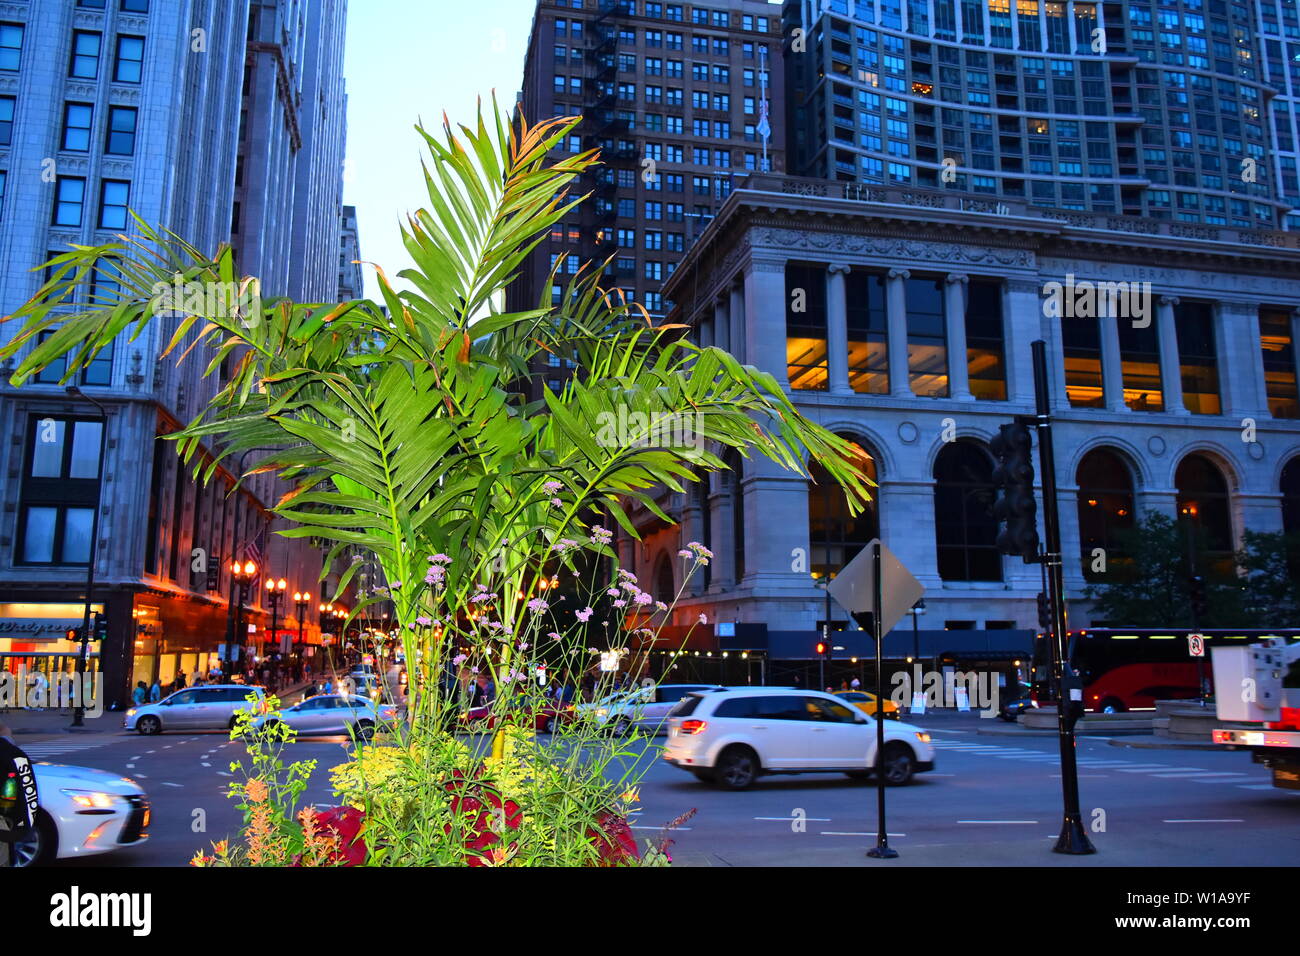 estas fotos fueron tomadas en el centro de Chicago en un bonito atardecer,,de paceo por el centro de chicago.... Stock Photo